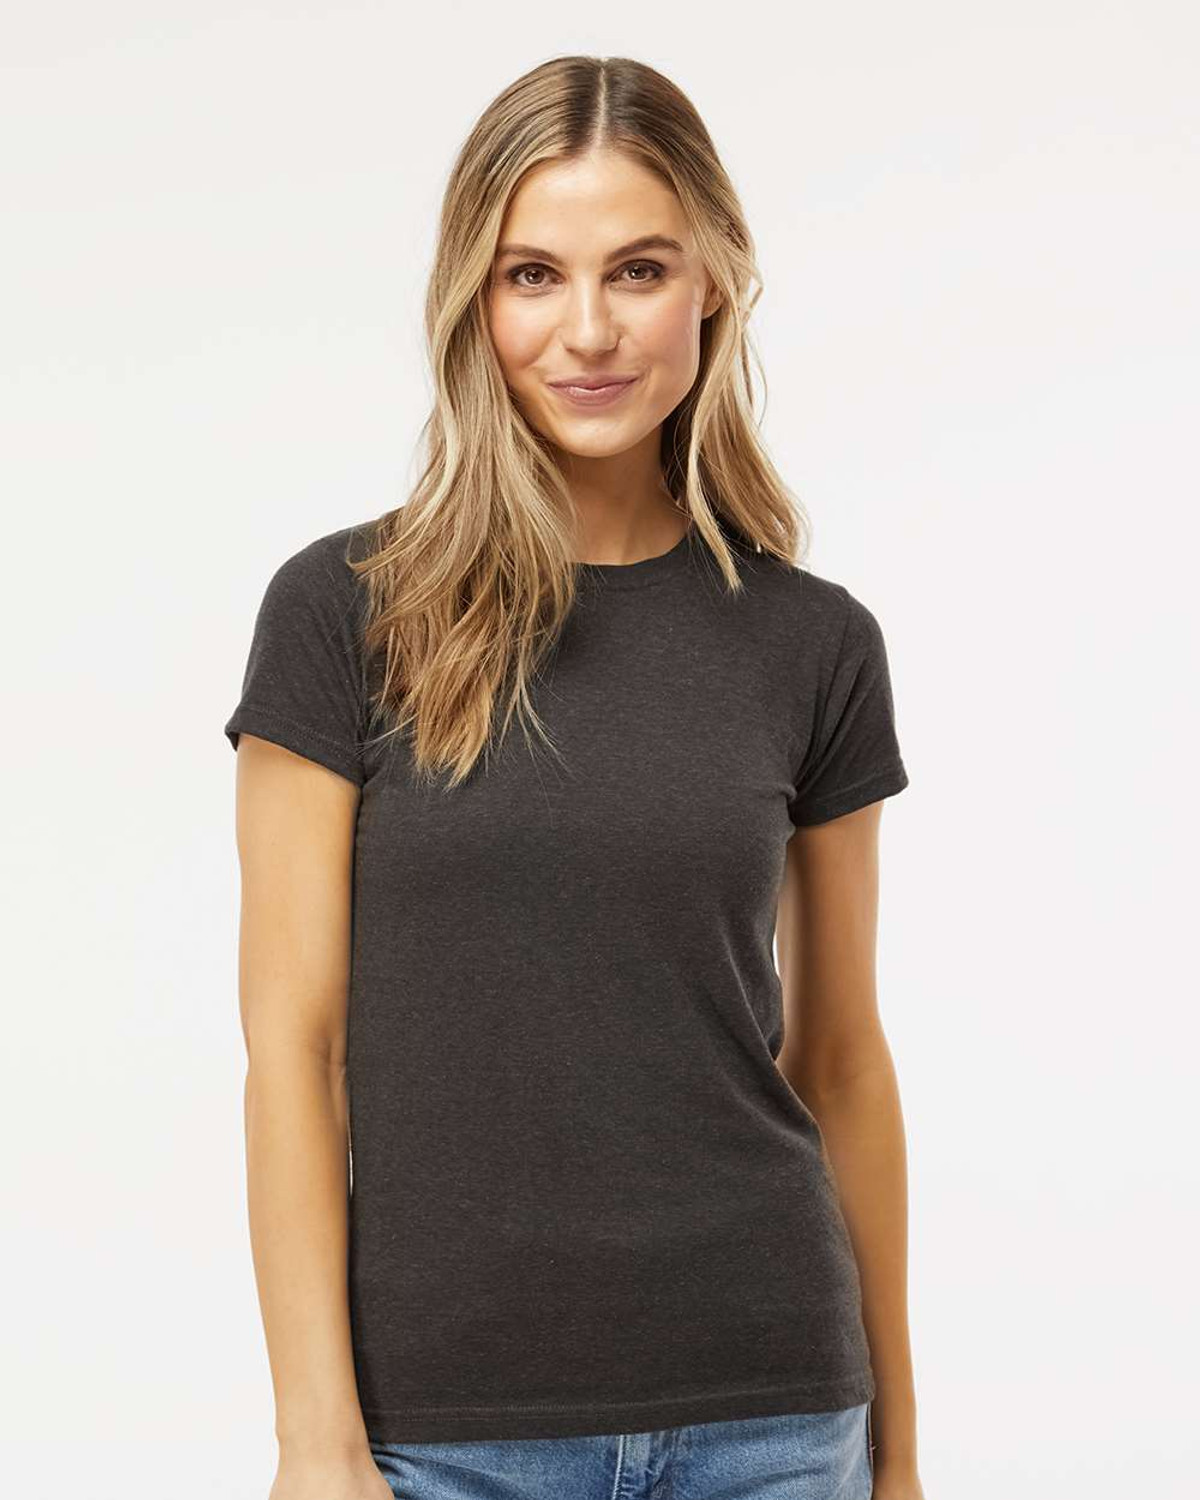 M&O 3540 - Women's Deluxe Blend T-Shirt